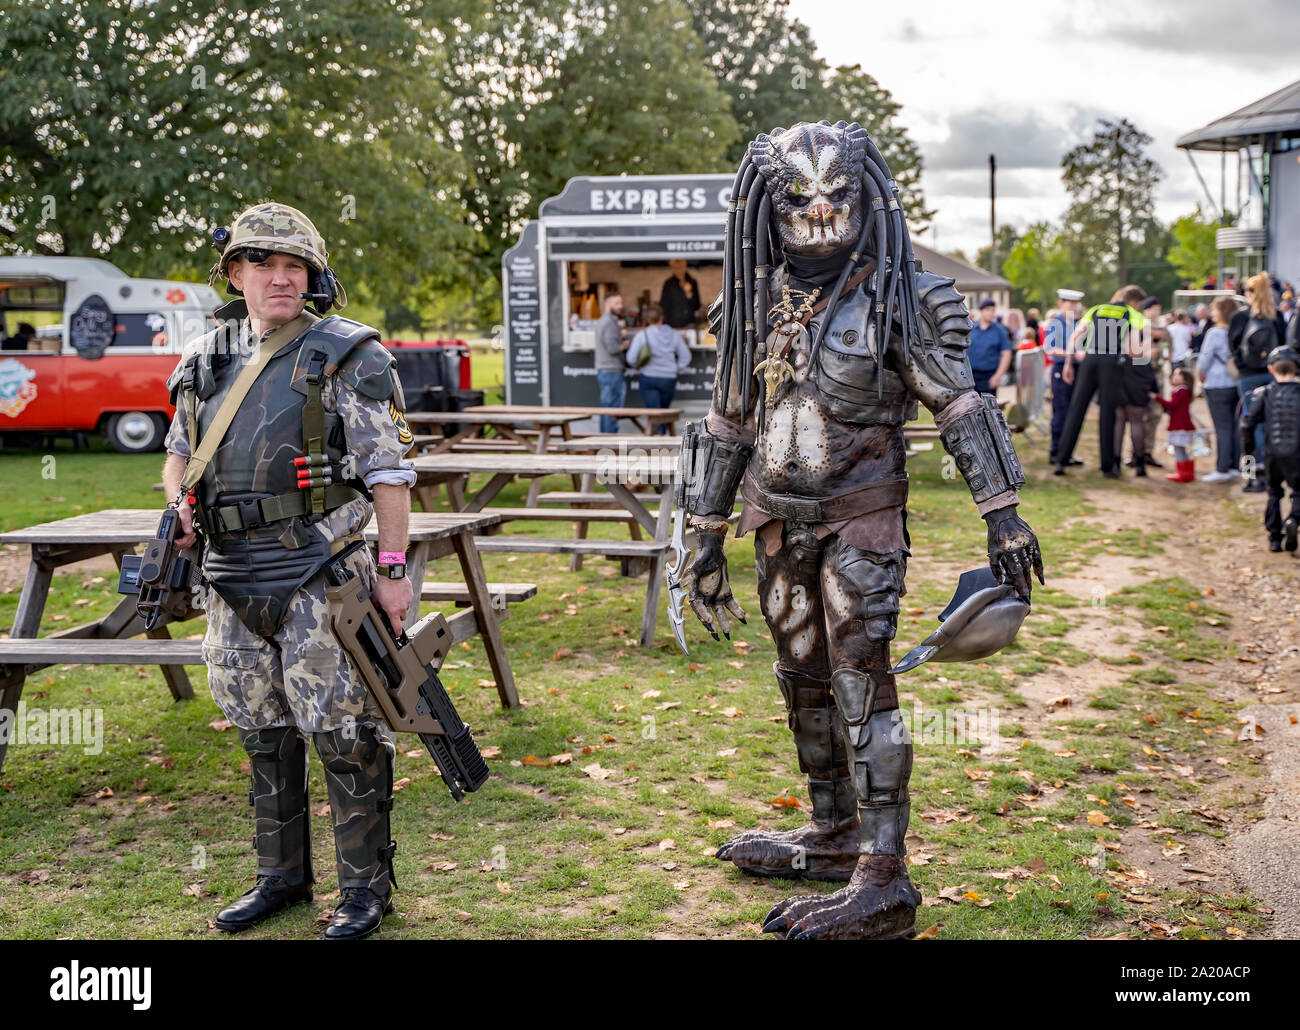 Deux hommes déguisés en personnages du film de science-fiction, Predator, divertissant la foule en attente pour le film Nor-Con et comic convention Banque D'Images